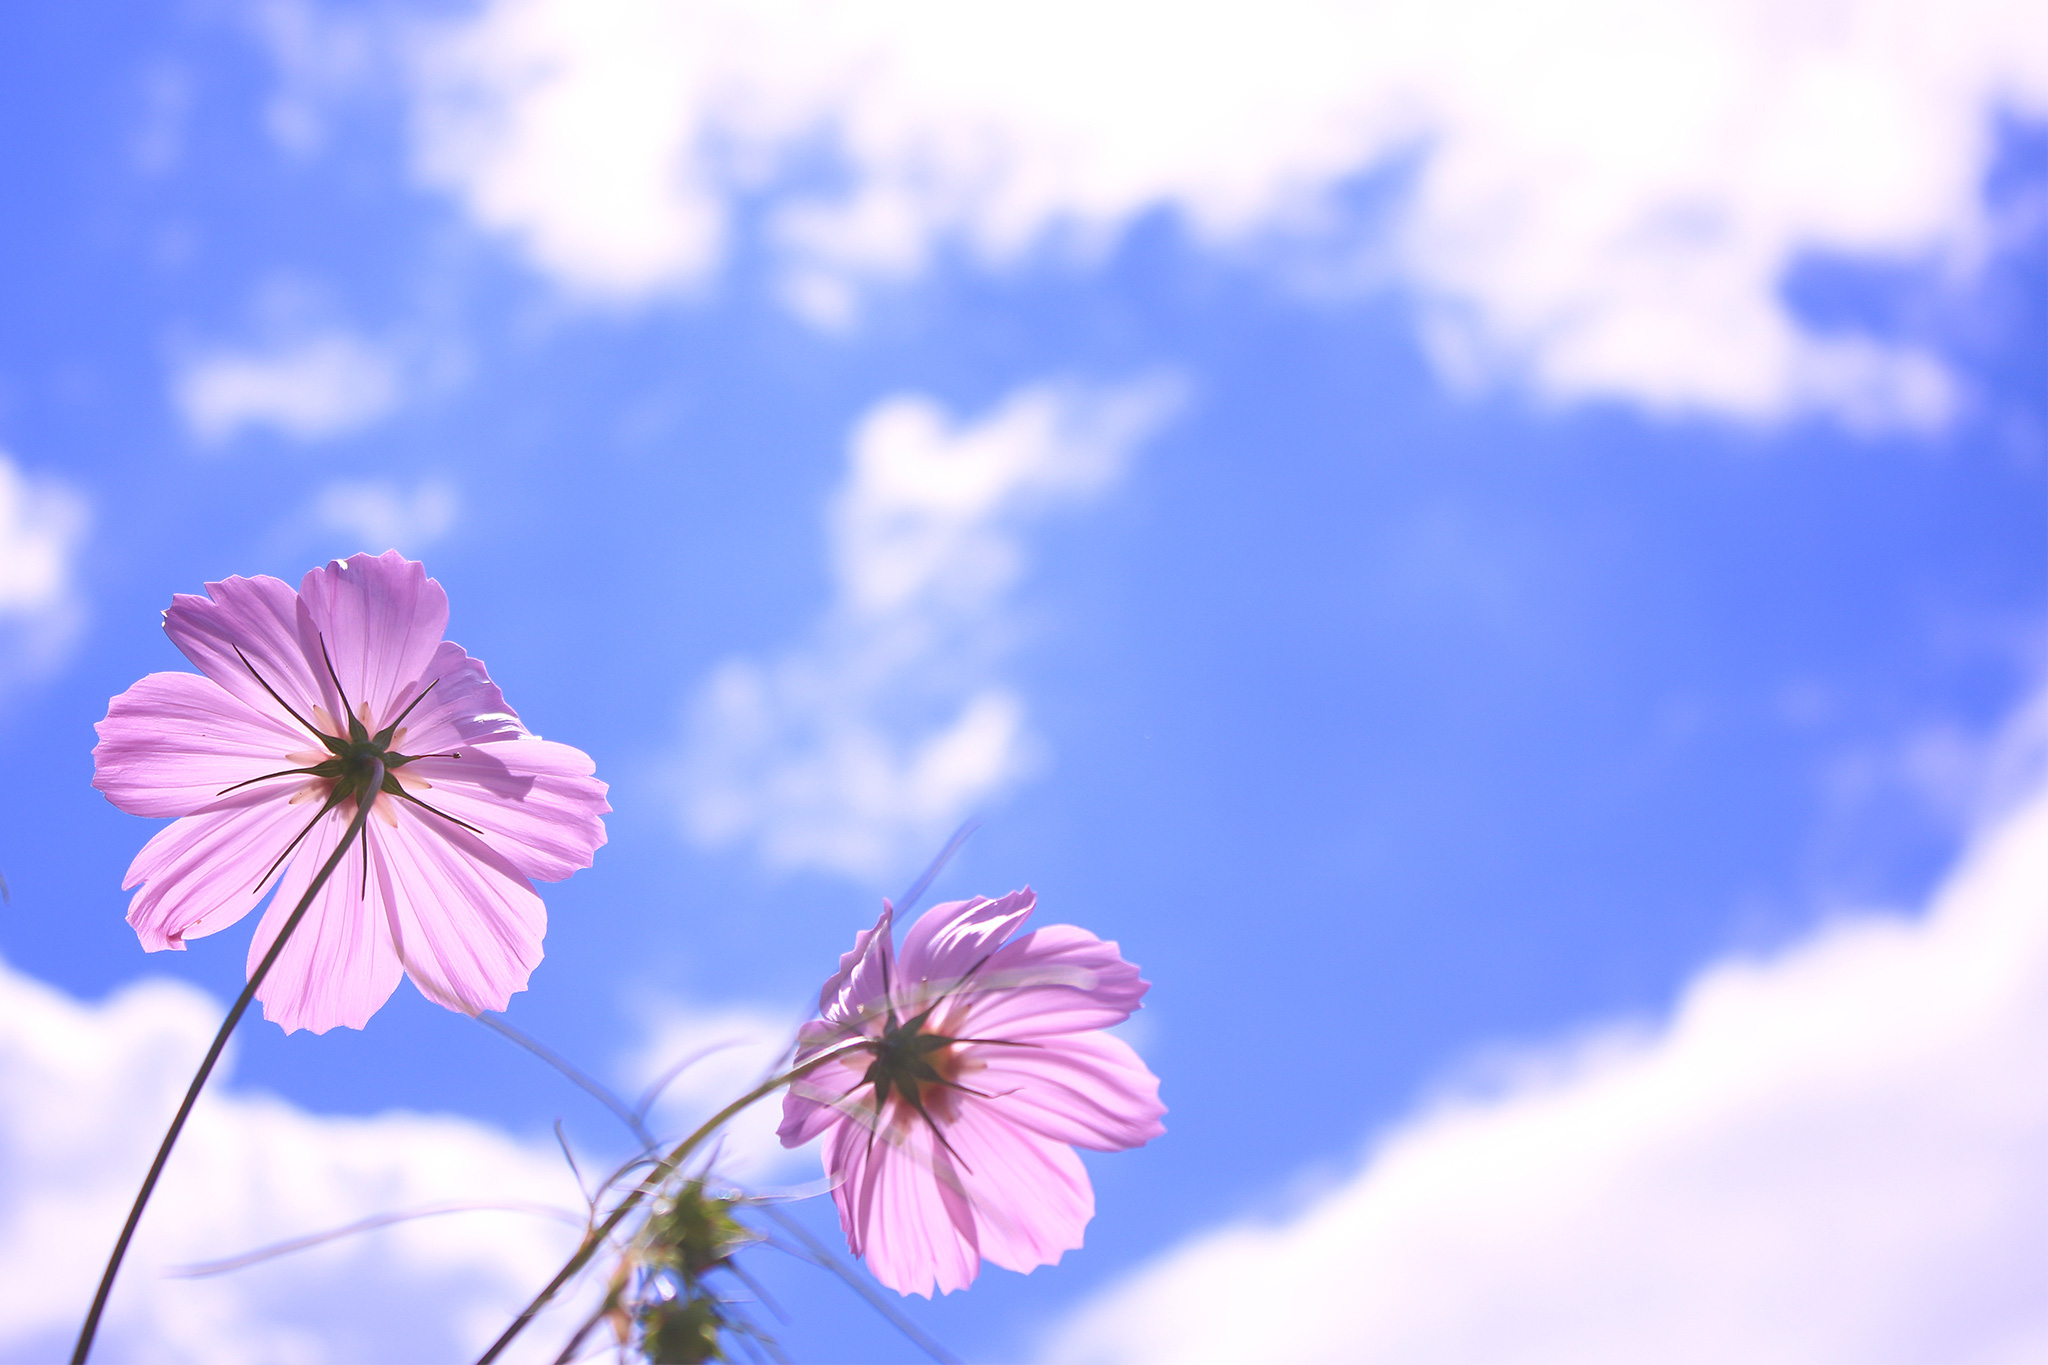 空に向かって咲いているピンク色の秋桜のフリー画像 おしゃれなフリー写真素材 Girly Drop